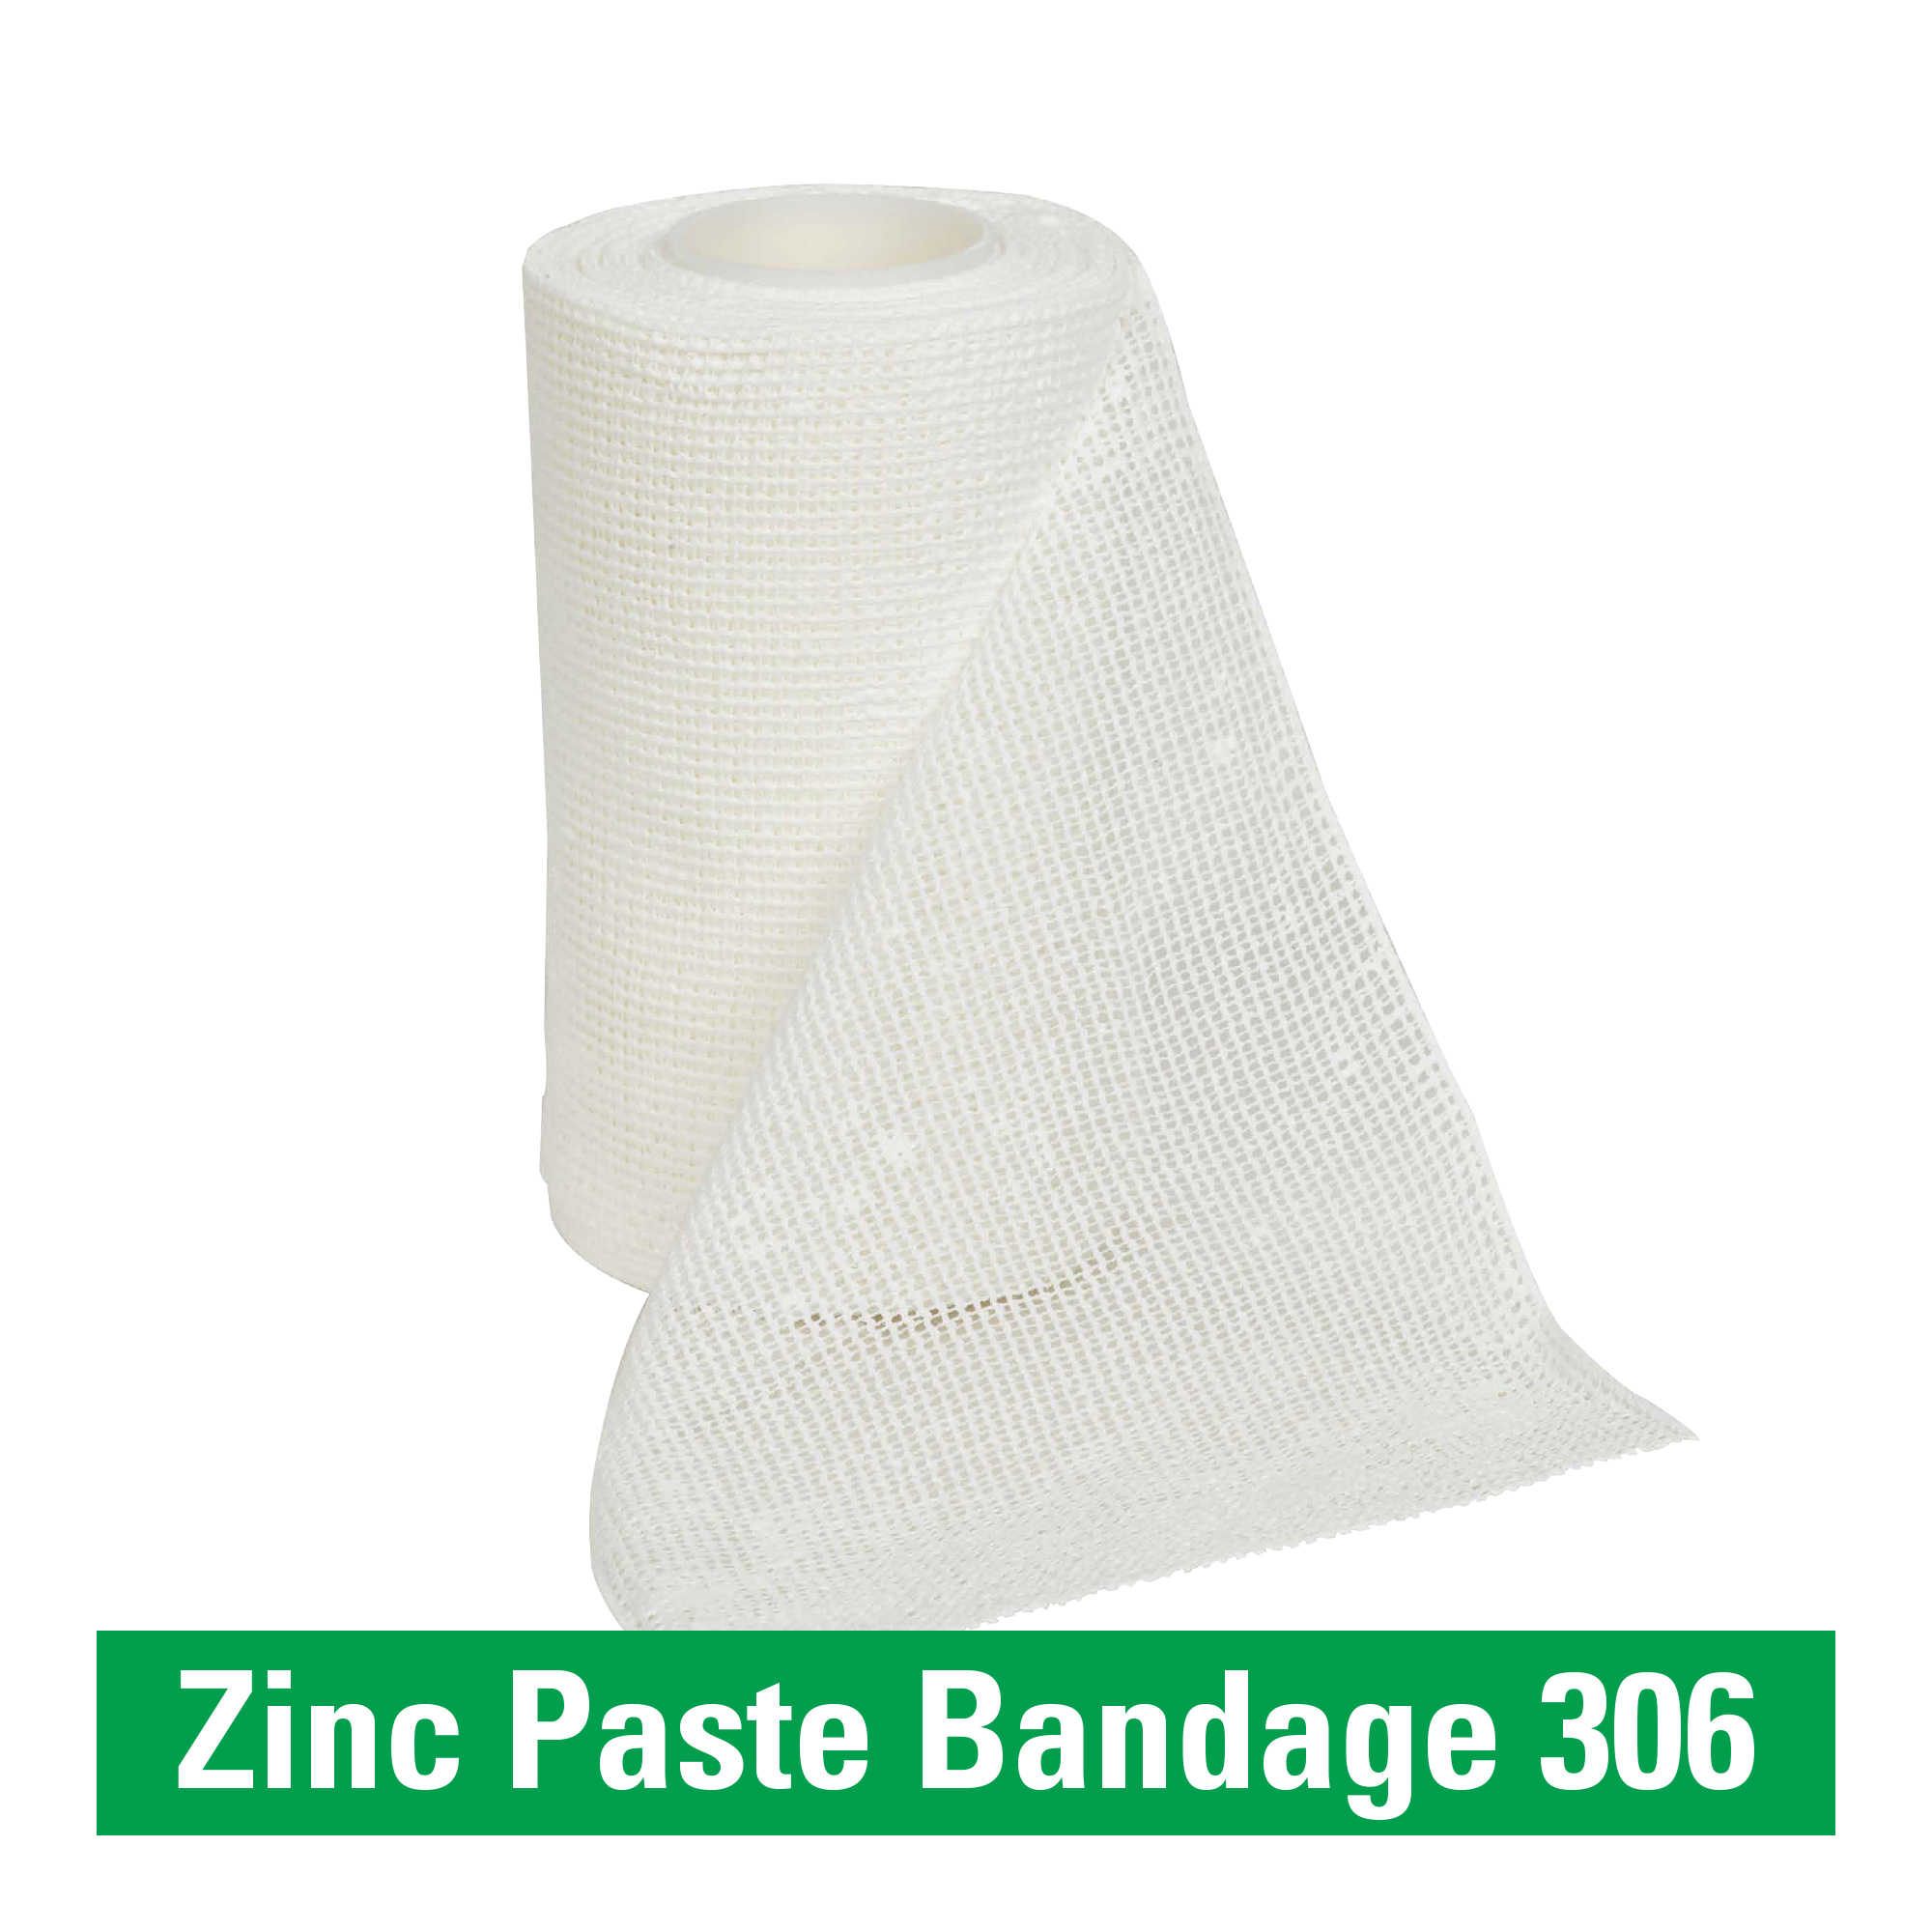 Zinc Paste Bandage 306